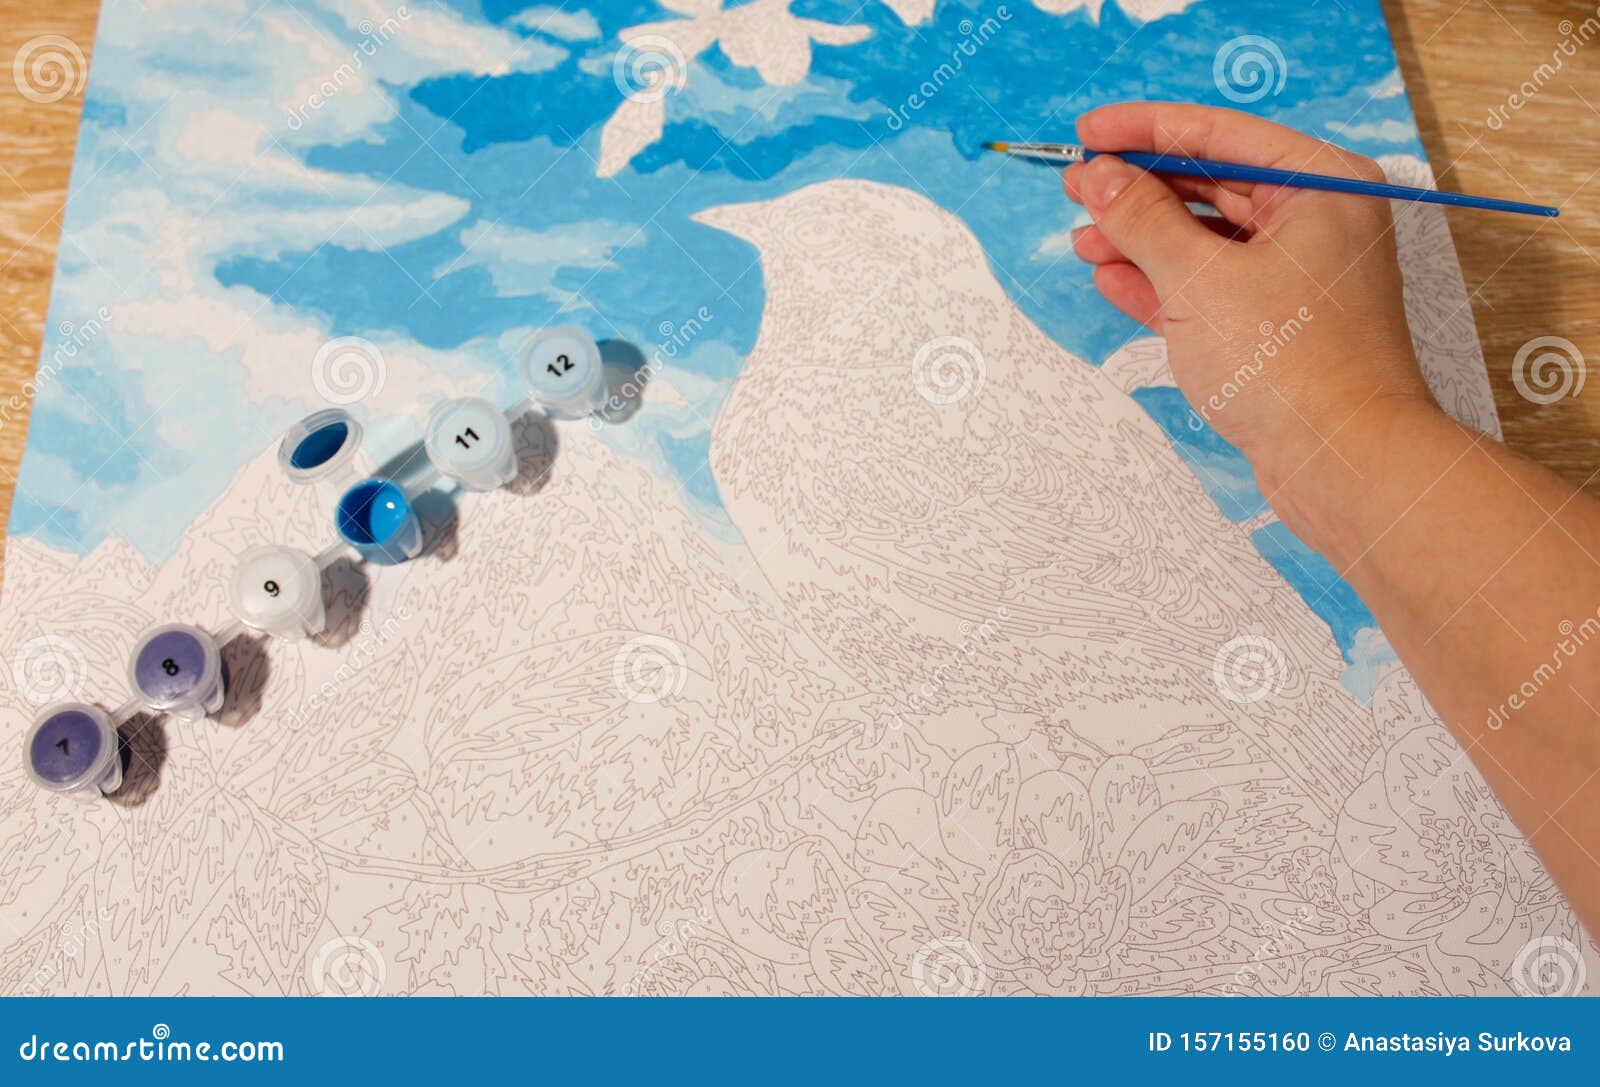 Naaldwerk Voor Kinderen En Amusement - Getalsmatig Tekenen Met Acrylverf Op Doek Spatbord, Potten Van Verf En Penselen Stock Foto - Image of diagram, volwassenen: